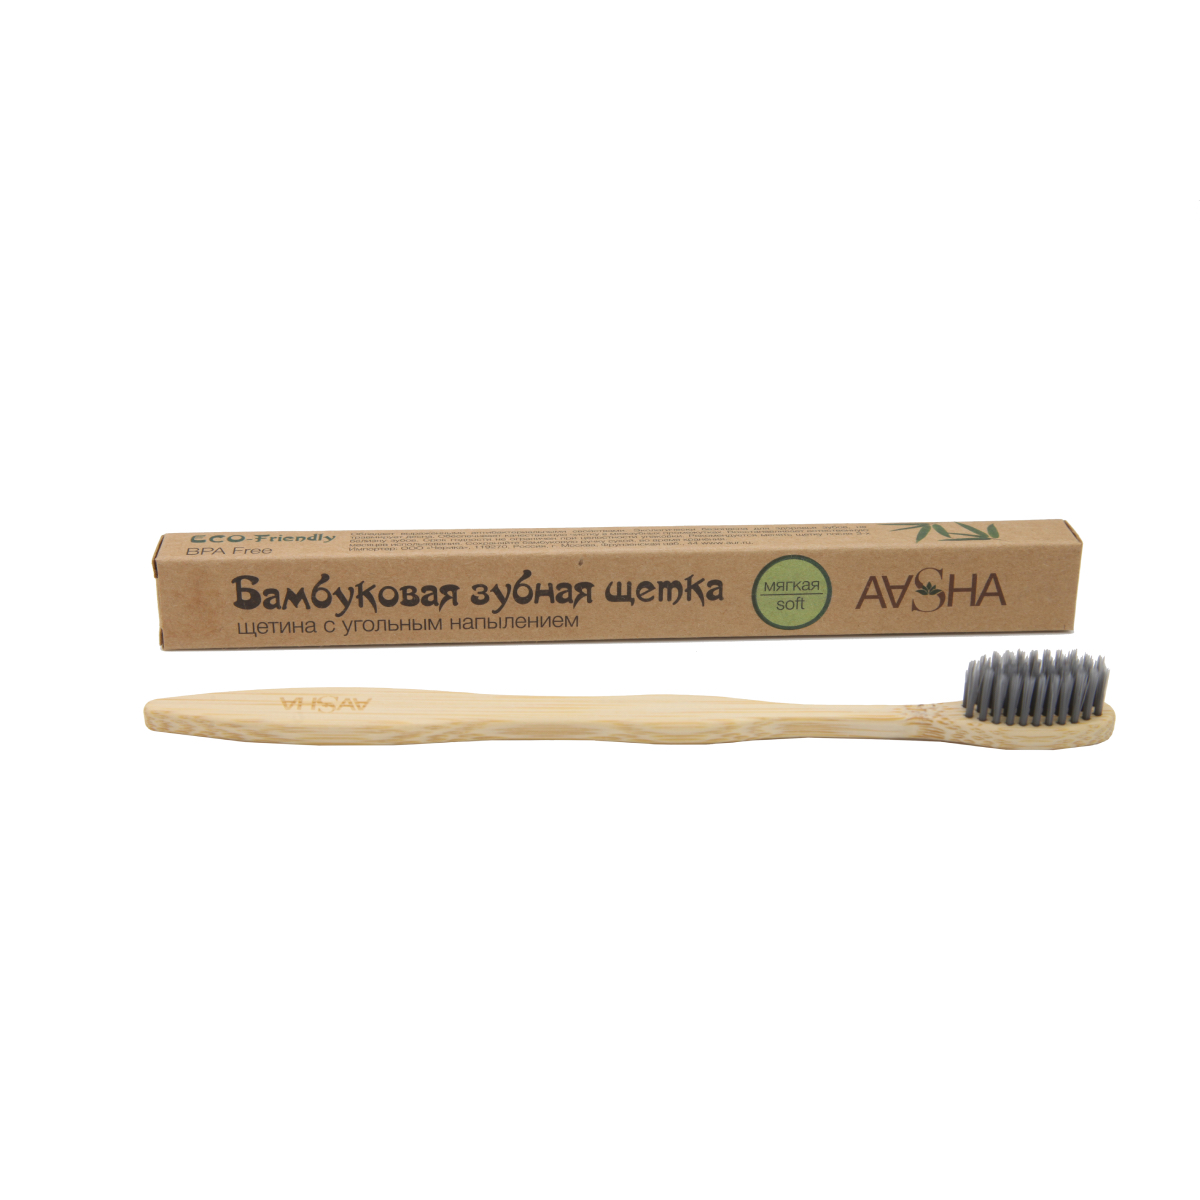 Бамбуковая зубная щетка Aasha с угольным напылением SOFT (мягкая), 1 шт. бамбуковая зубная щетка с подставкой